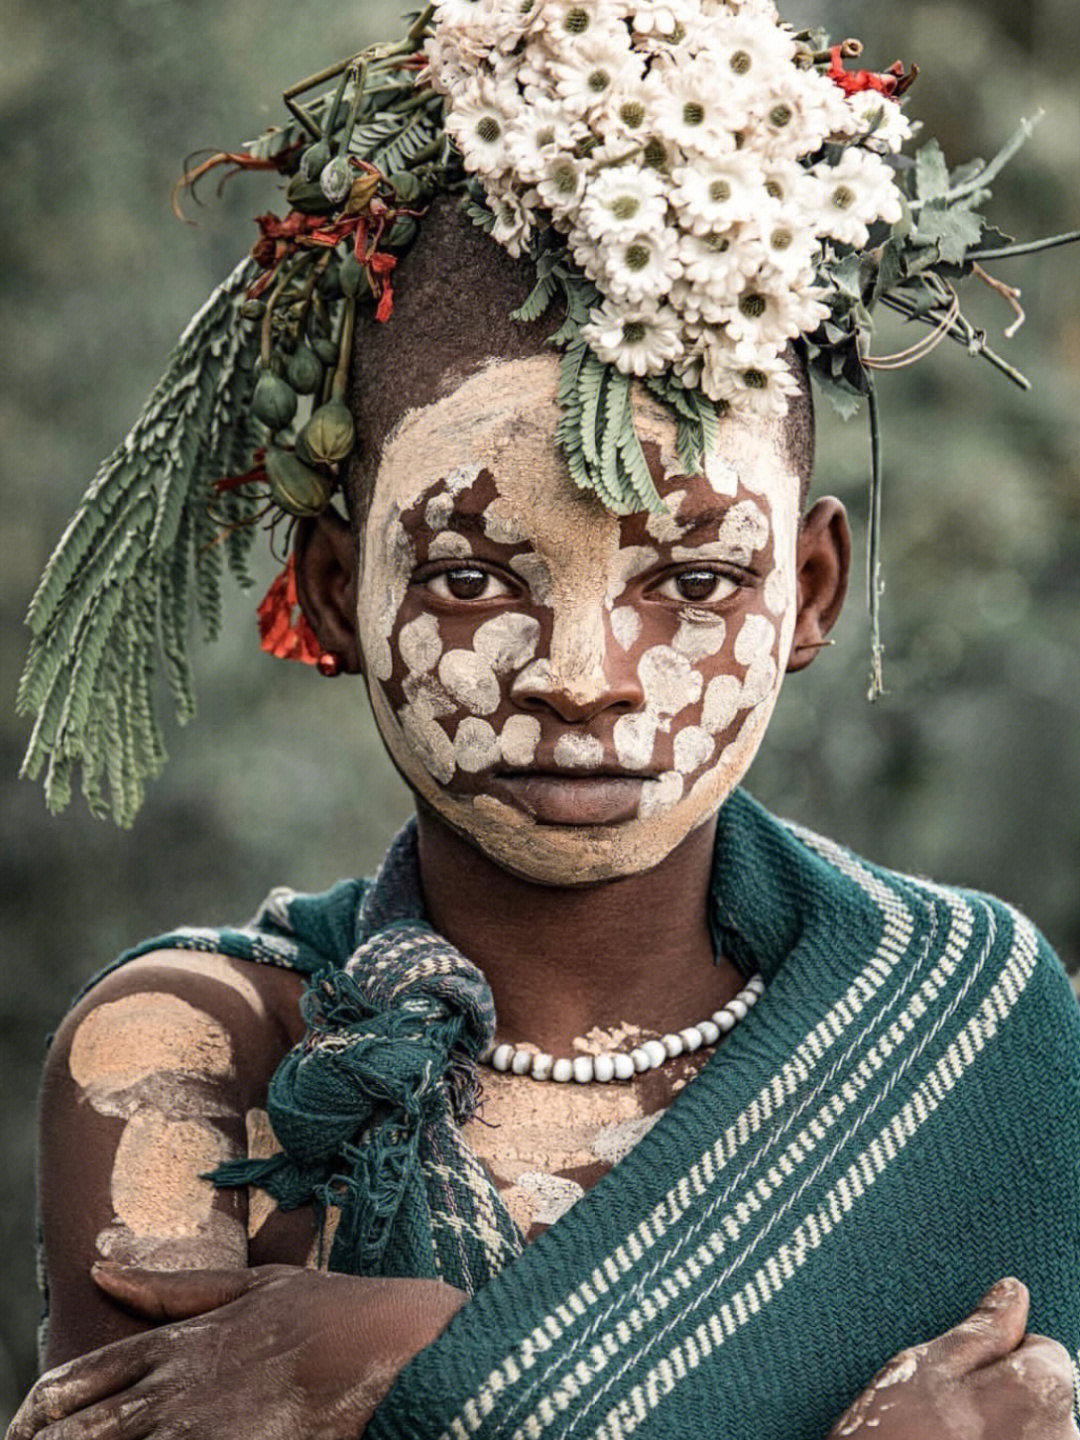 在埃塞尔比亚的苏里(suri)和苏尔玛(surma)部落,一直有身体彩绘的传统